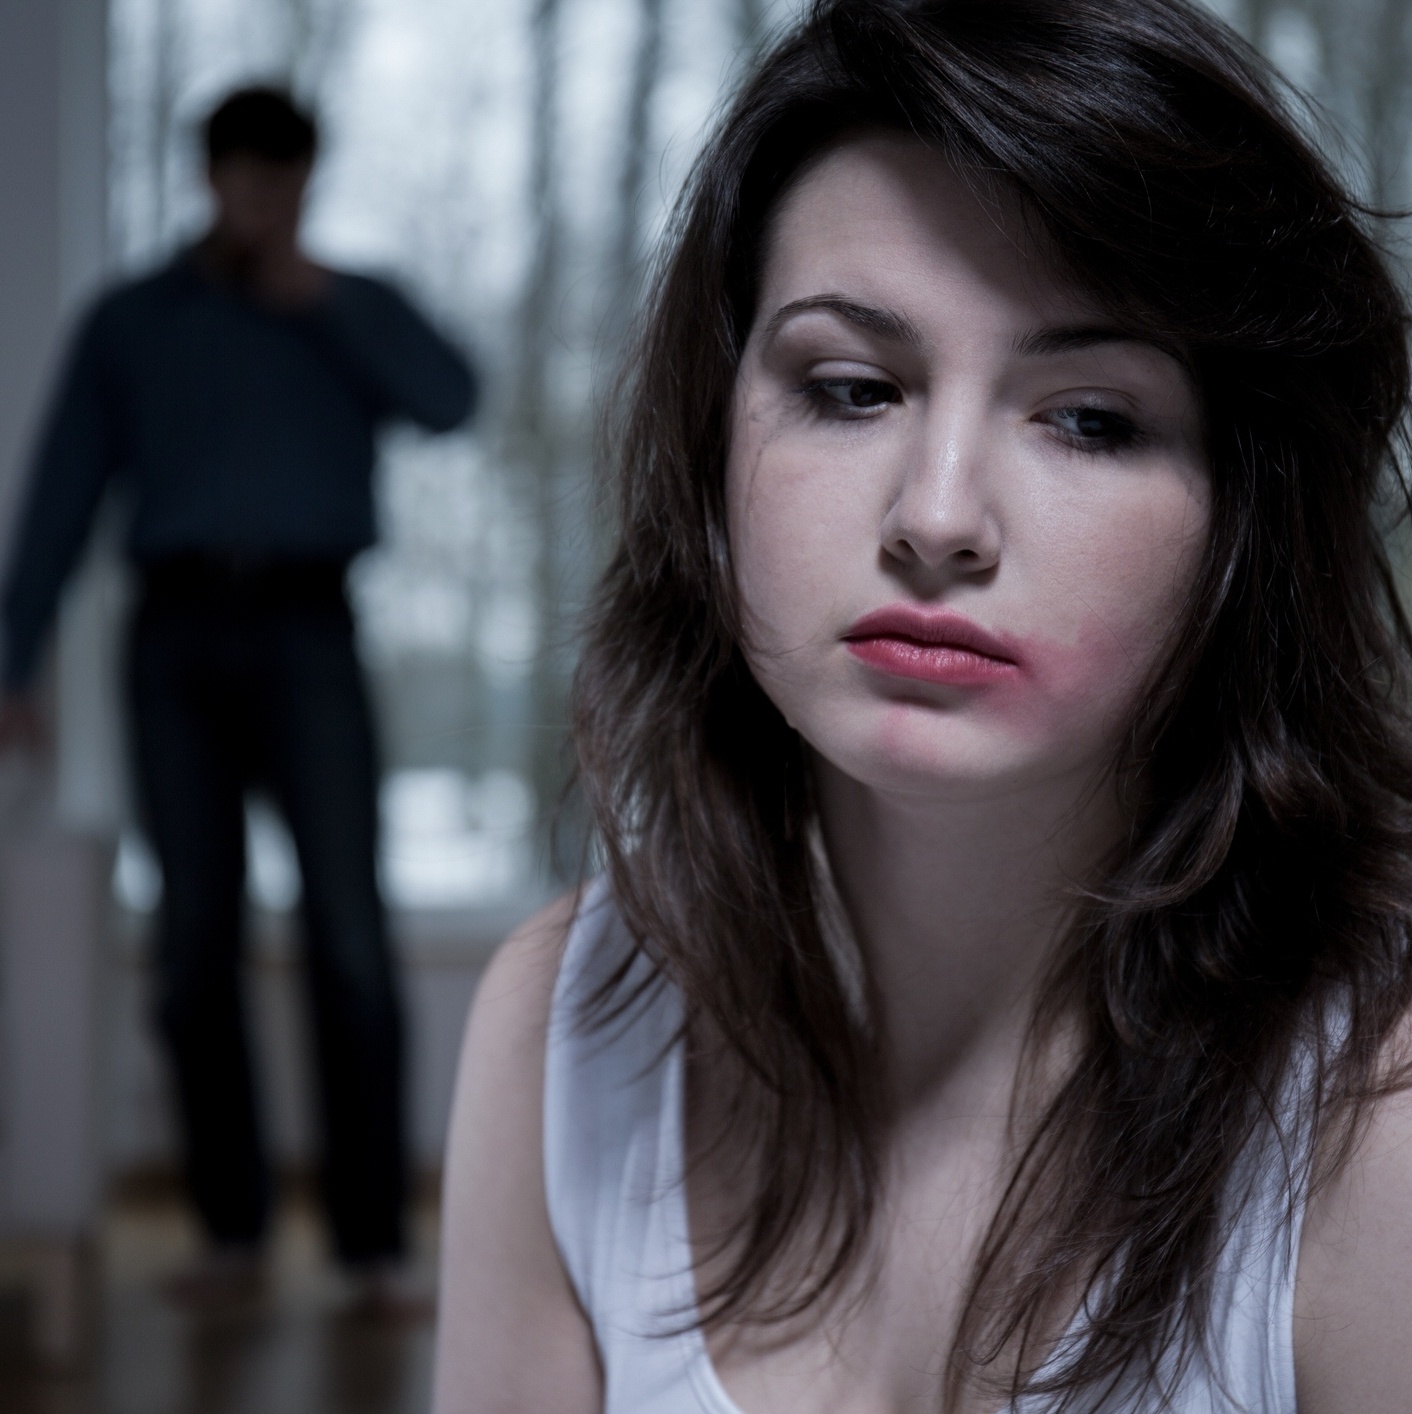 Relacionamento abusivo: 20 sinais de que você está em um